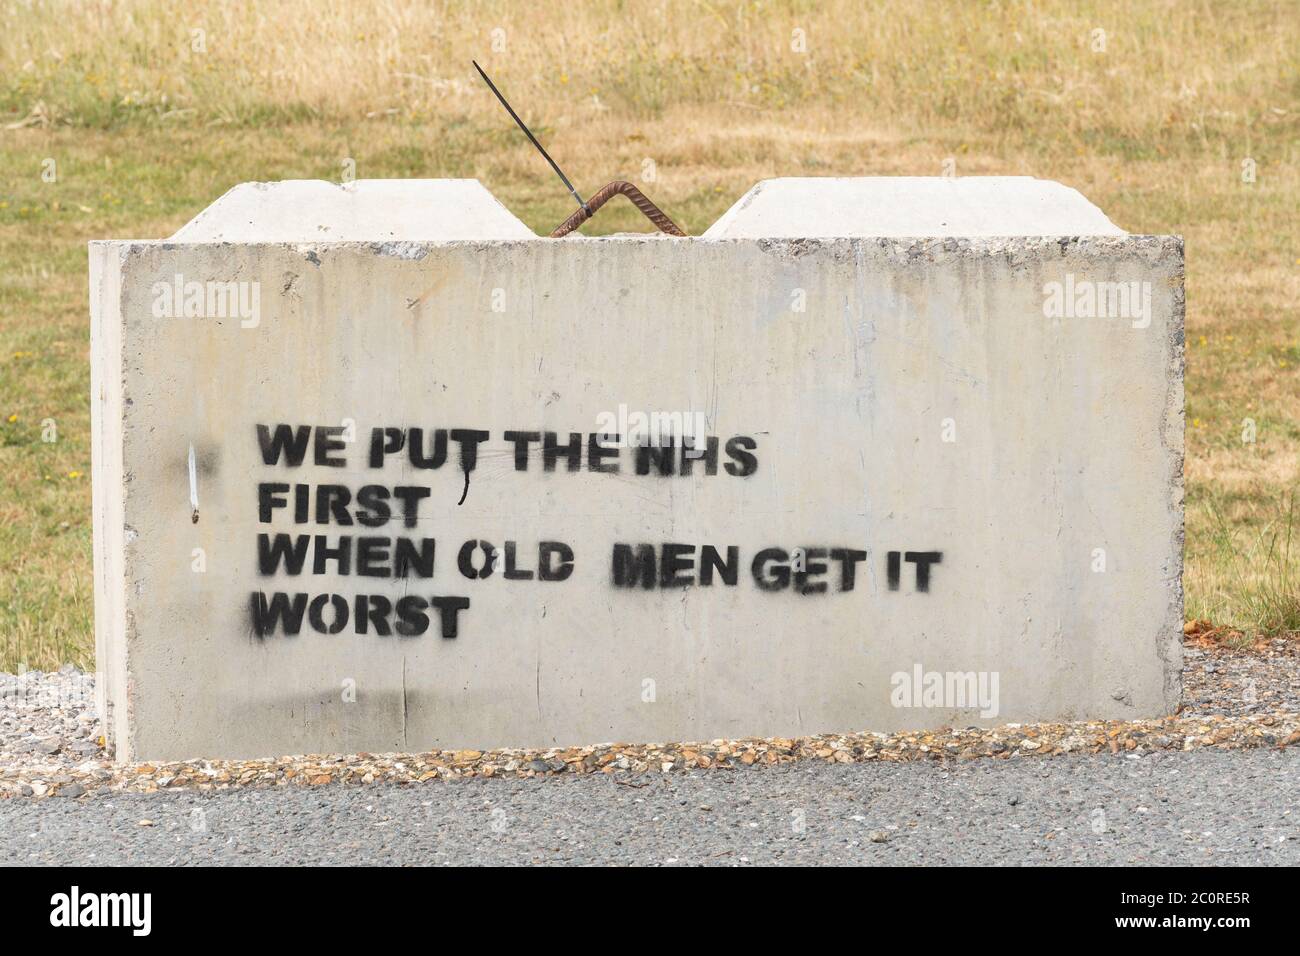 Mettiamo l’NHS al primo posto quando i vecchi si aggravano, i graffiti in riferimento all’età sono associati ad un aumento del rischio di coronavirus covid-19, UK, 2020 Foto Stock